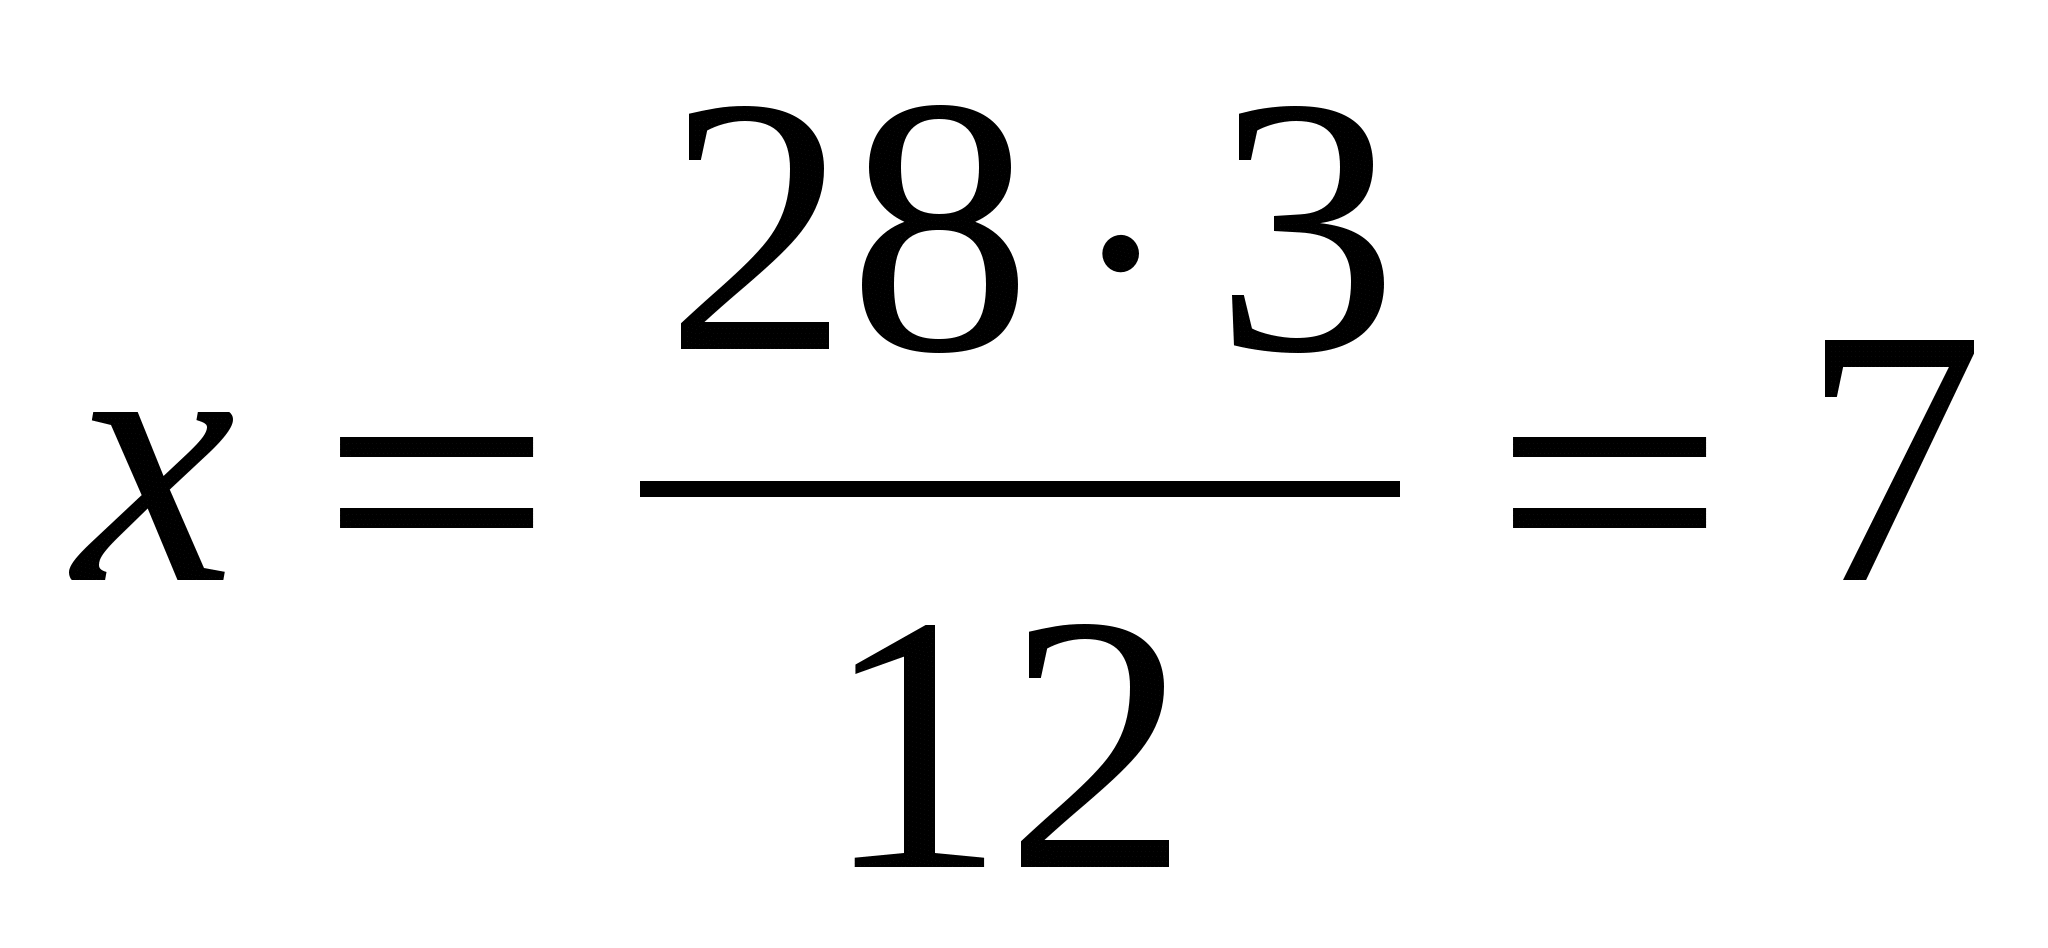 Урок по математике для 6 класса «Действия с десятичными и обыкновенными дробями».